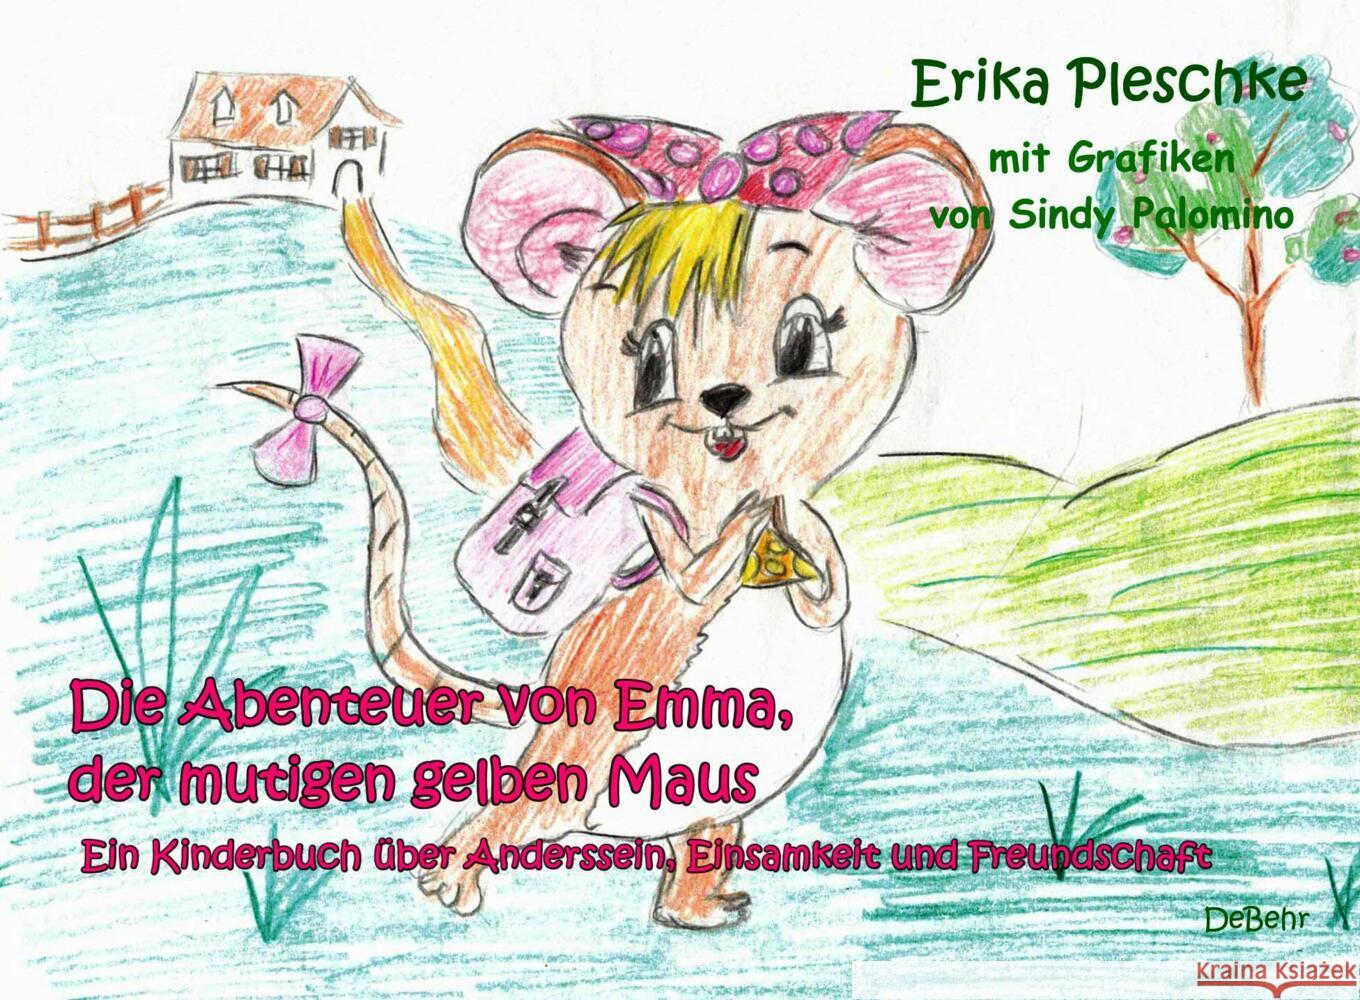 Die Abenteuer von Emma, der mutigen gelben Maus - Ein Kinderbuch über Anderssein, Einsamkeit und Freundschaft Pleschke, Erika 9783957538628 DeBehr - książka